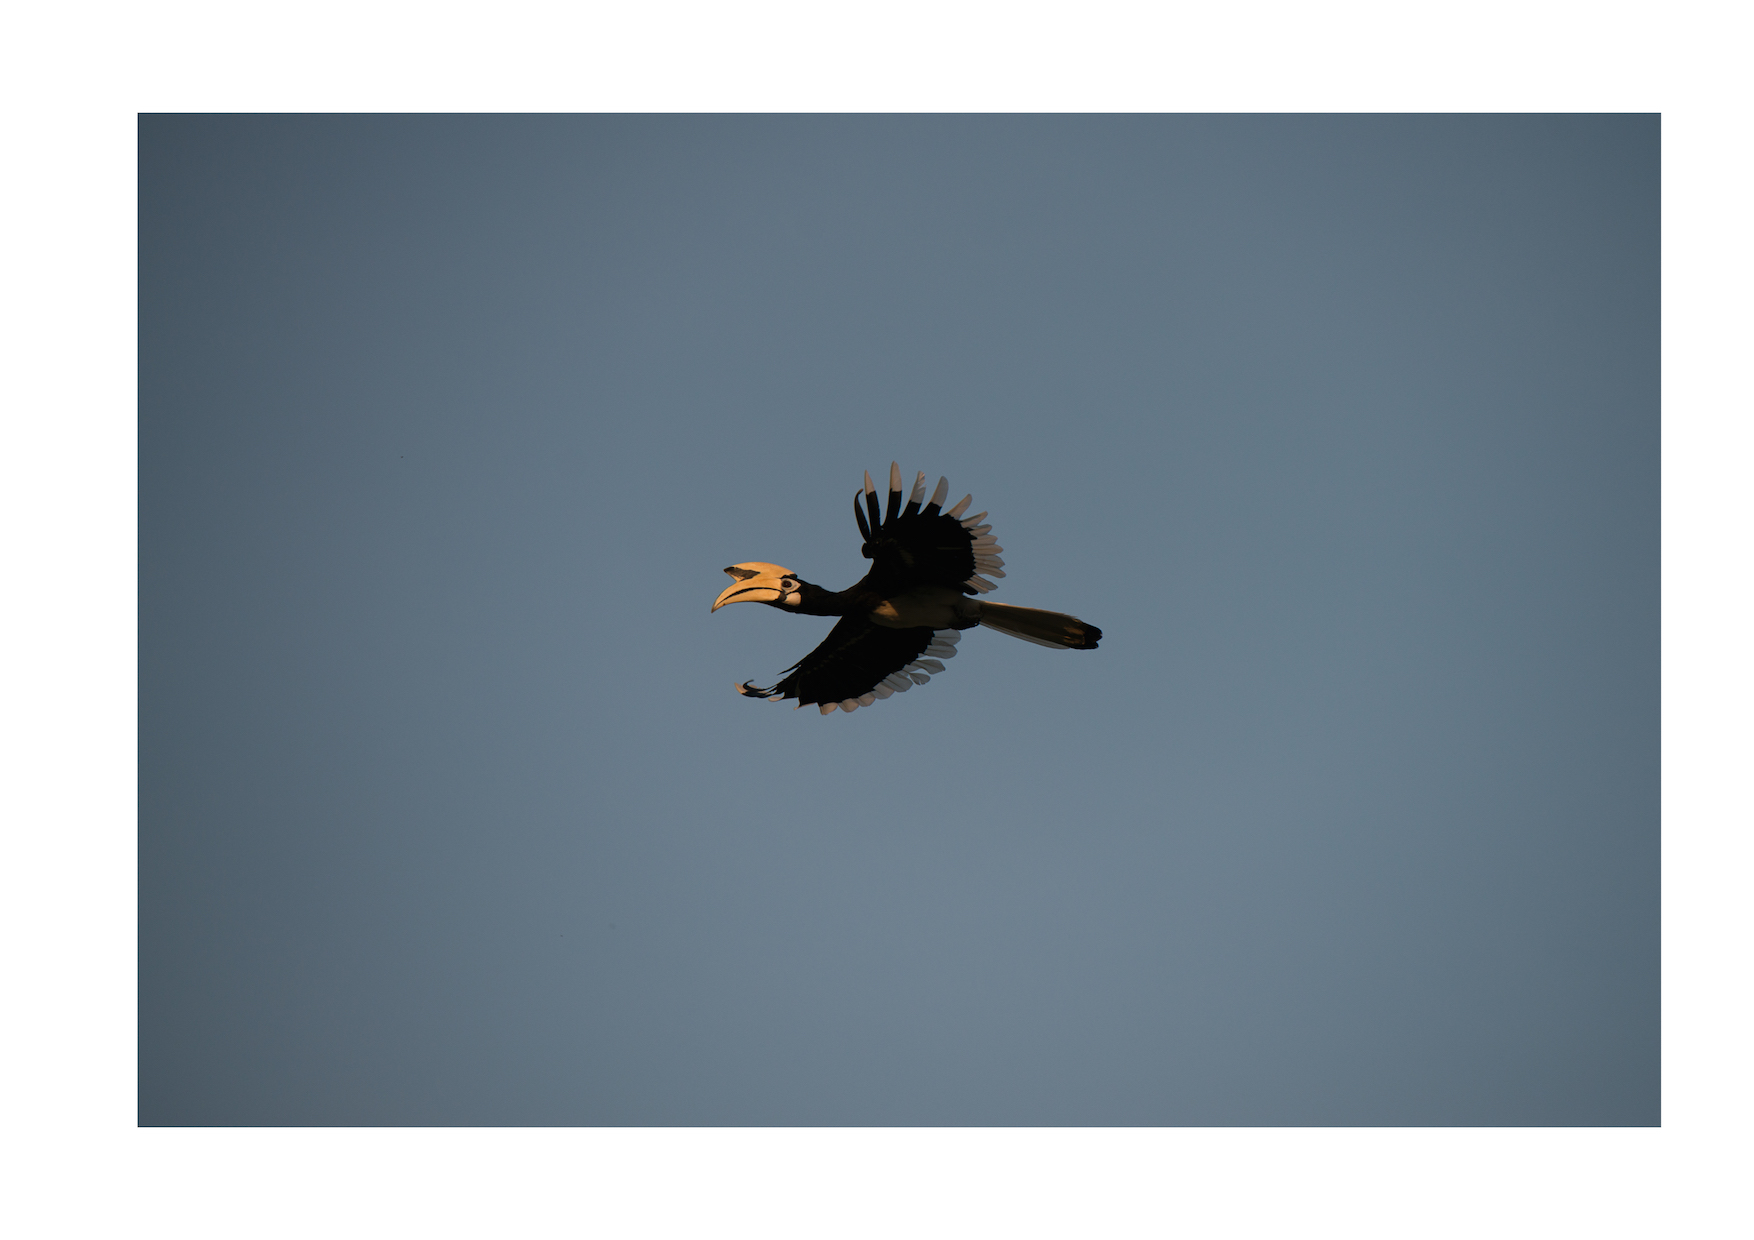 Hornbill, Borneo